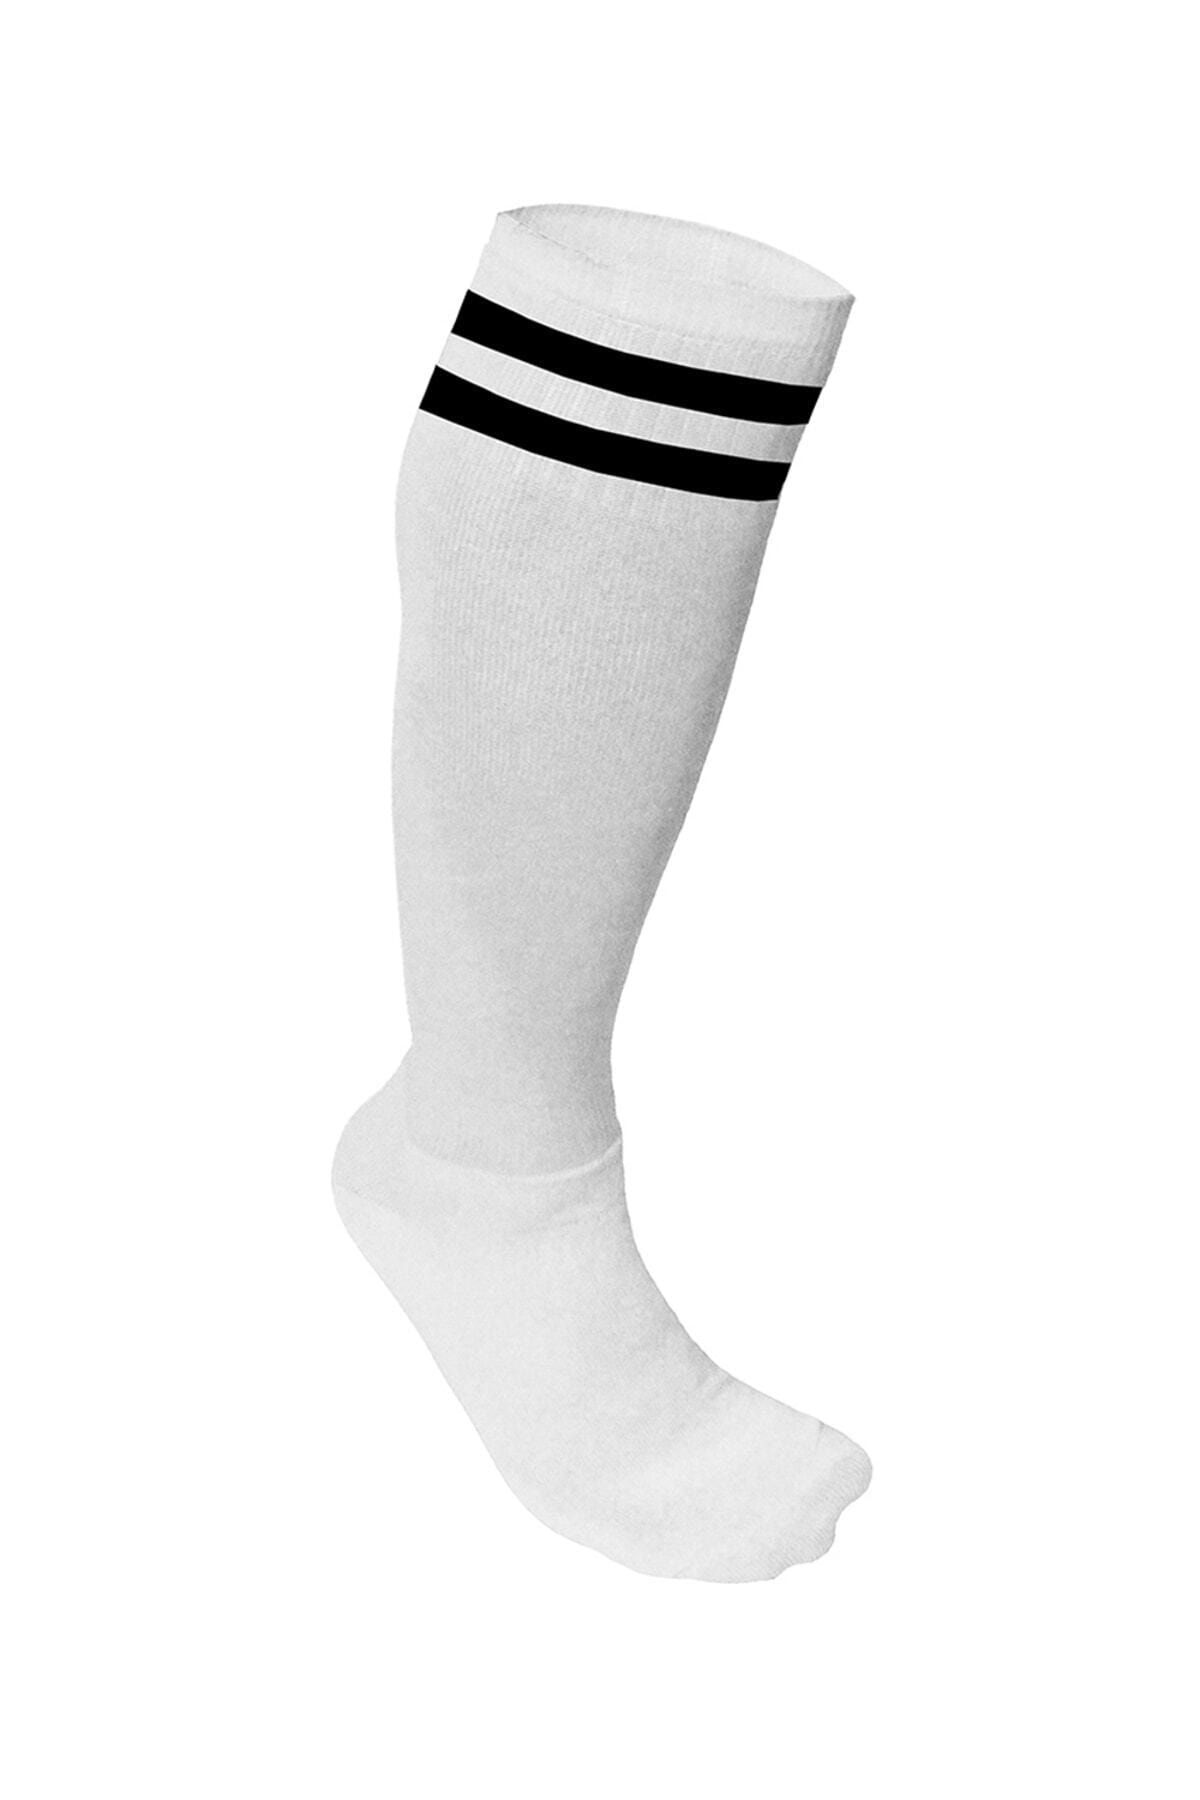 Spor724 Süper Futbol Tozluğu-Çorabı Beyaz Siyah - 36849